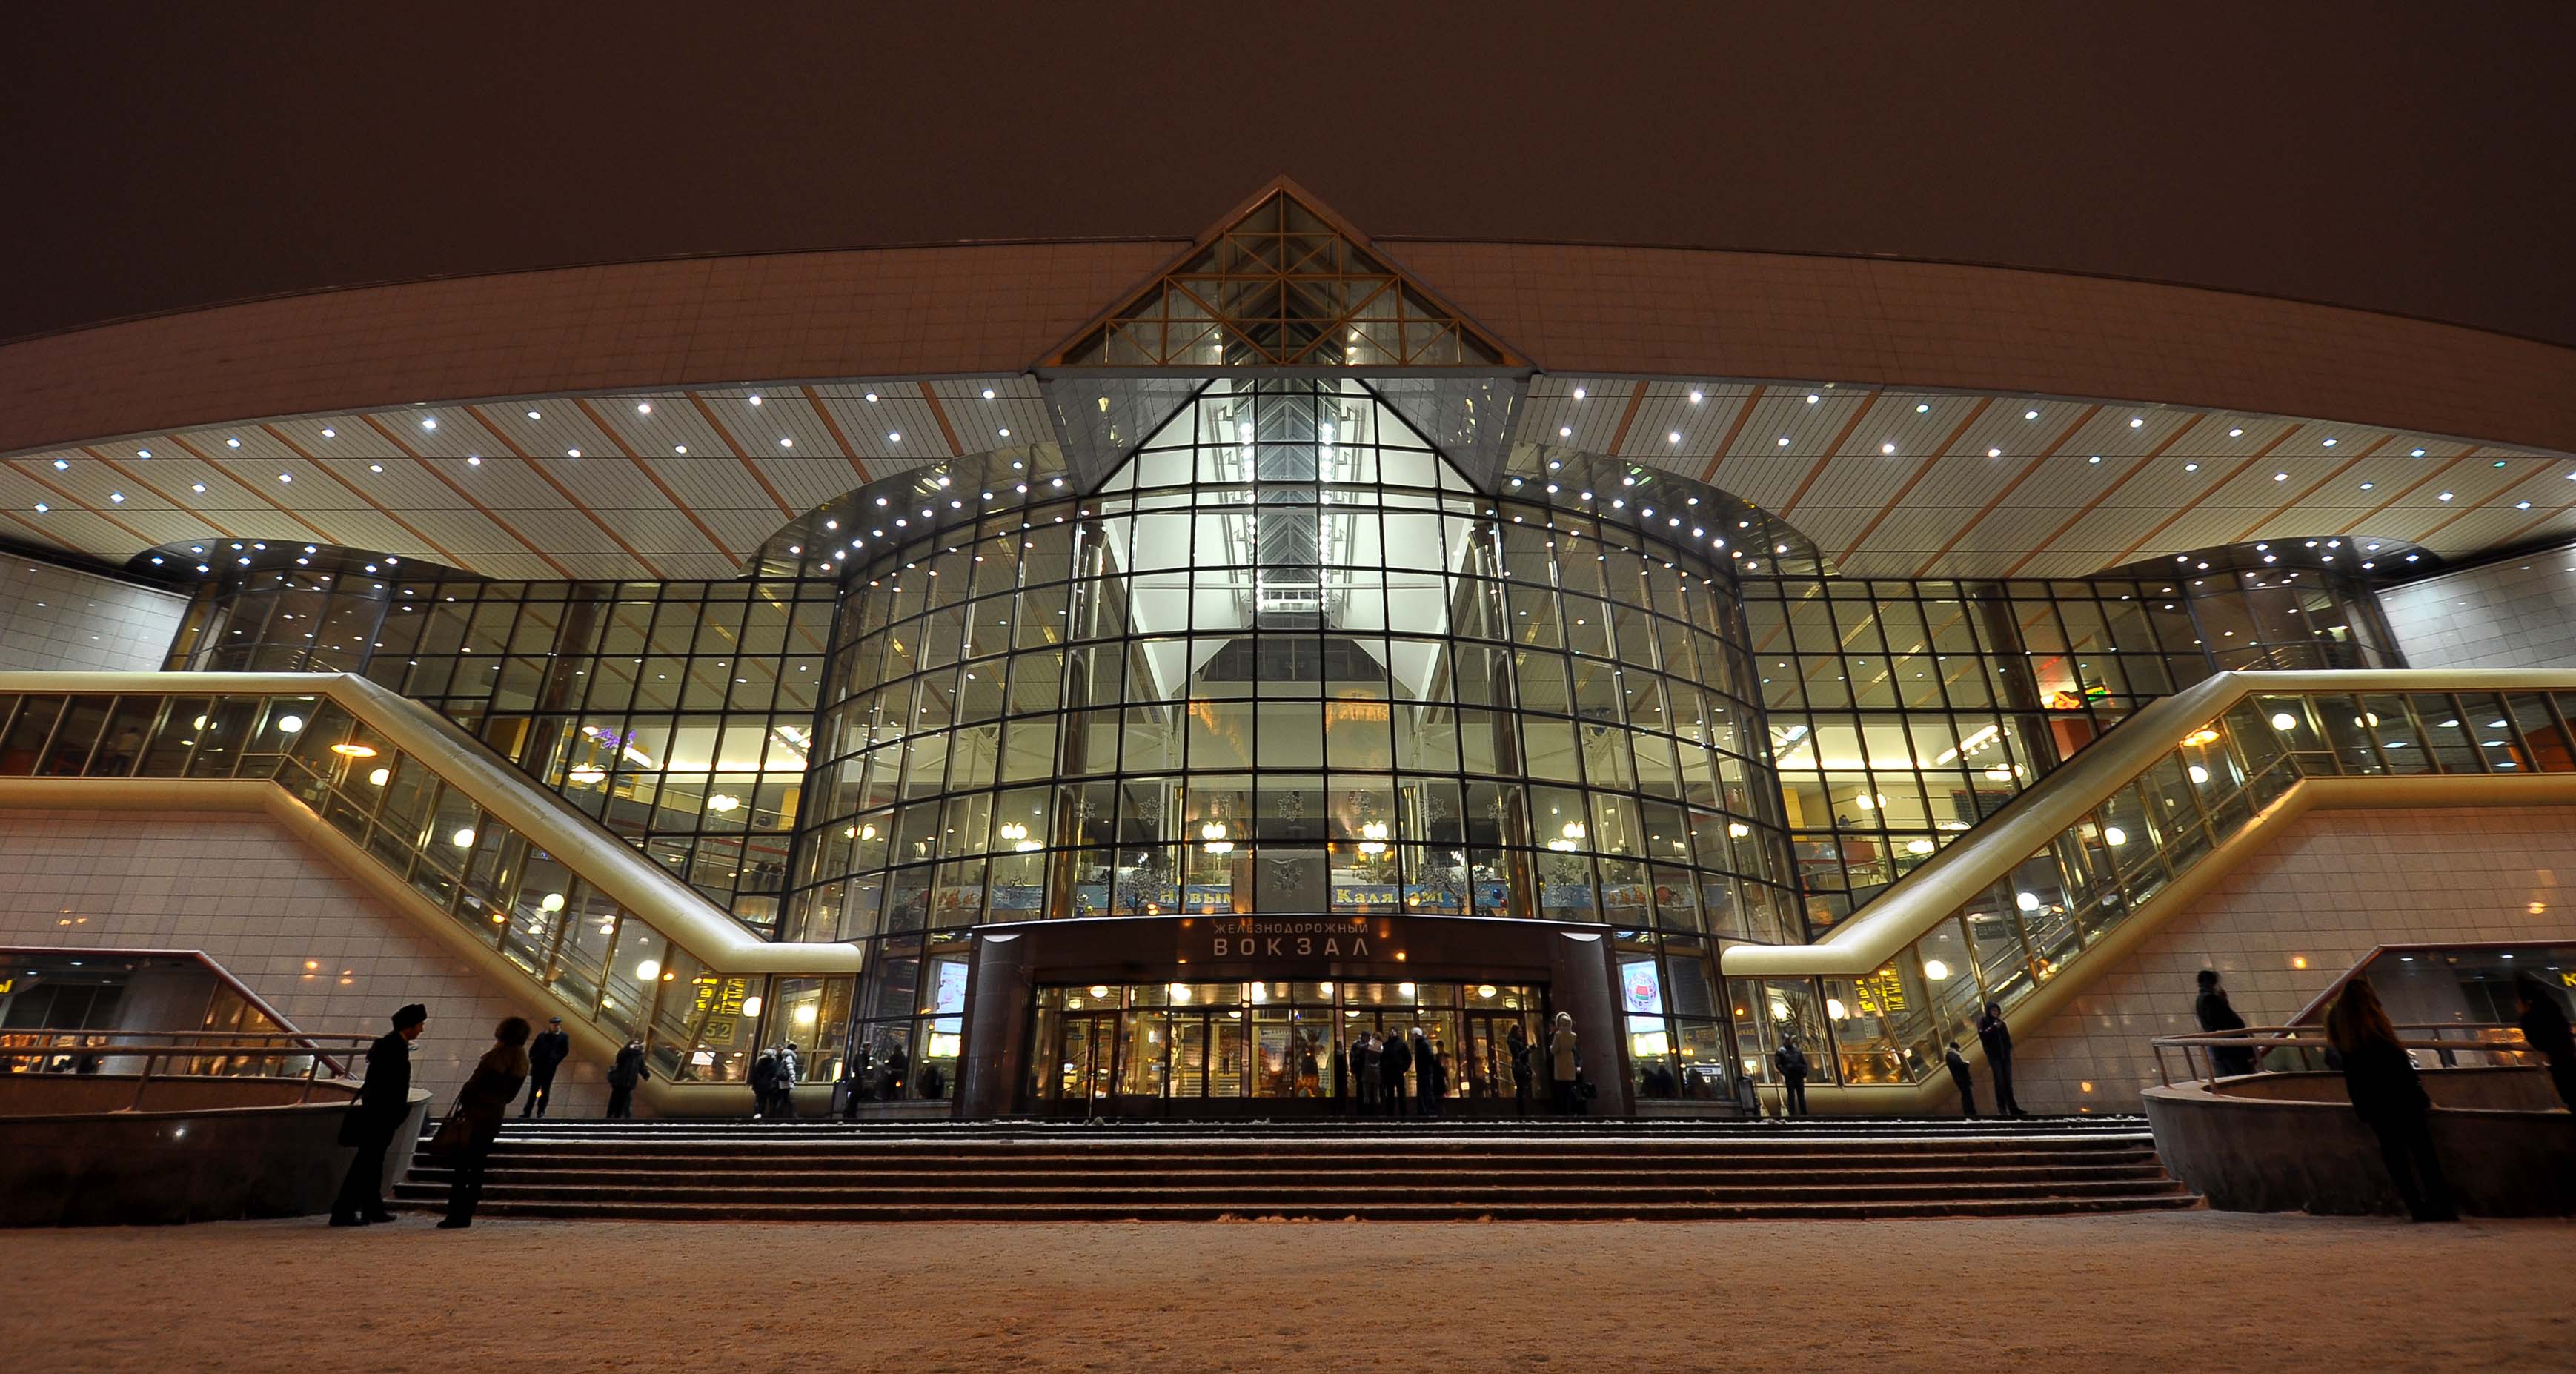 Мінський залізничний вокзал - пасажирський термінал станції Мінськ-Пасажирський в столиці Білорусі місті Мінську